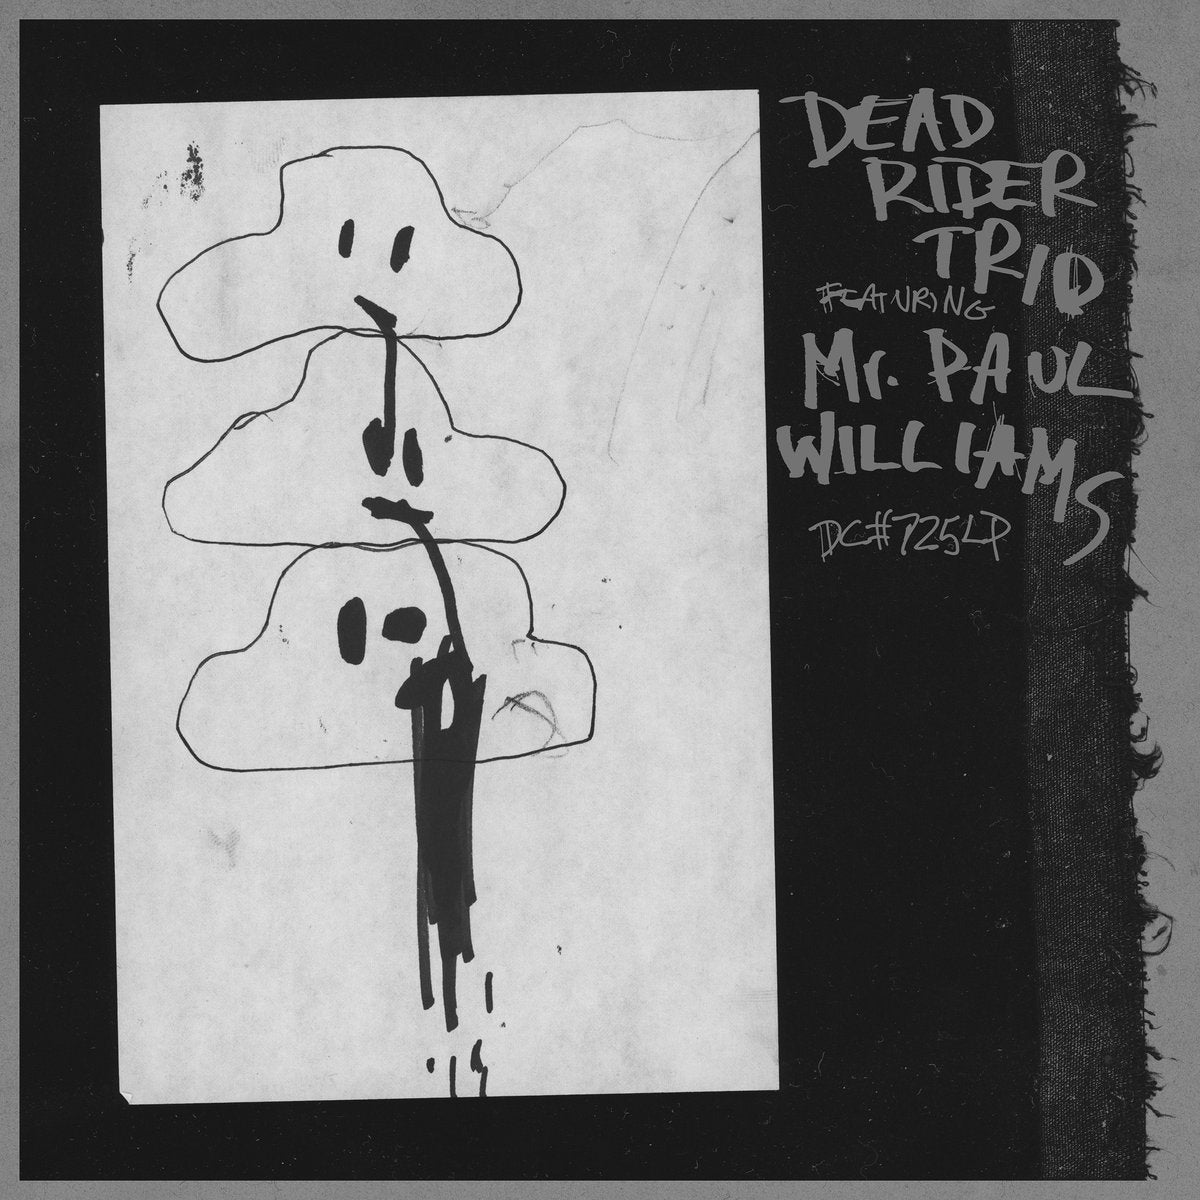 Dead Rider Trio Featuring Mr. Paul Williams - Dead Rider Trio Featuring Mr. Paul Williams LP